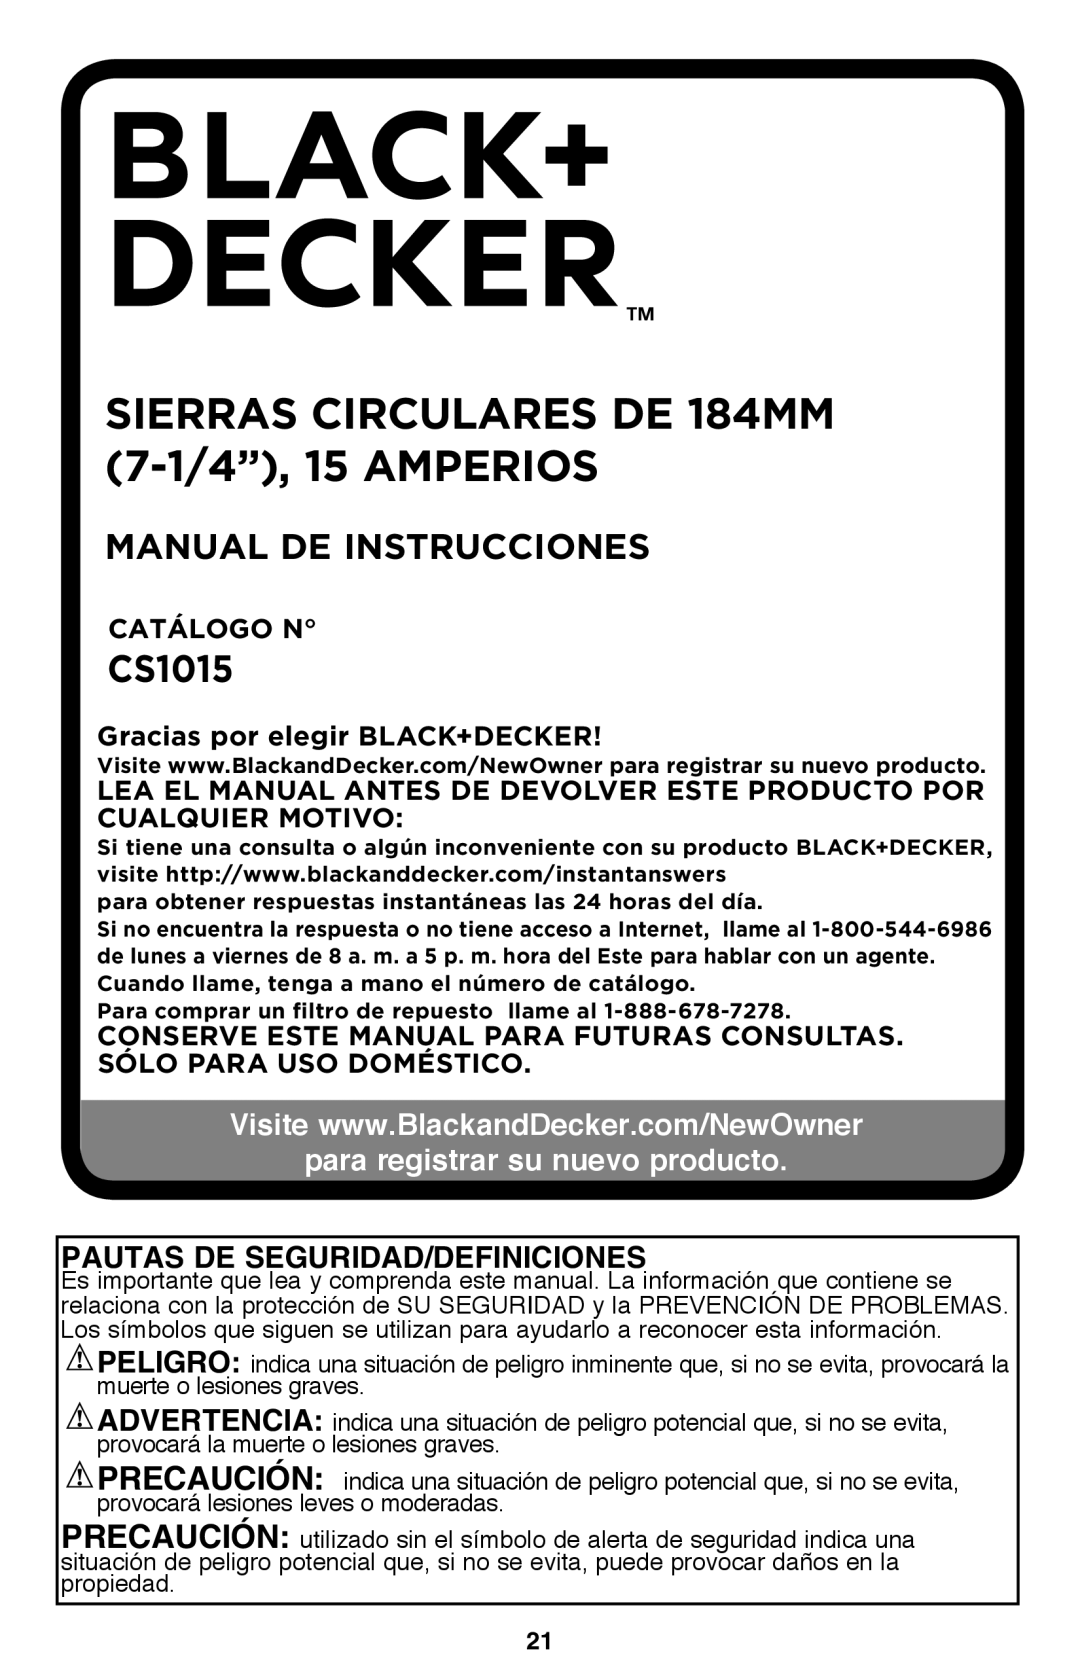 Black & Decker CS1015 sierras circulares de 184mm 7-1/4”, 15 amperios, Manual De Instrucciones, Catálogo N 